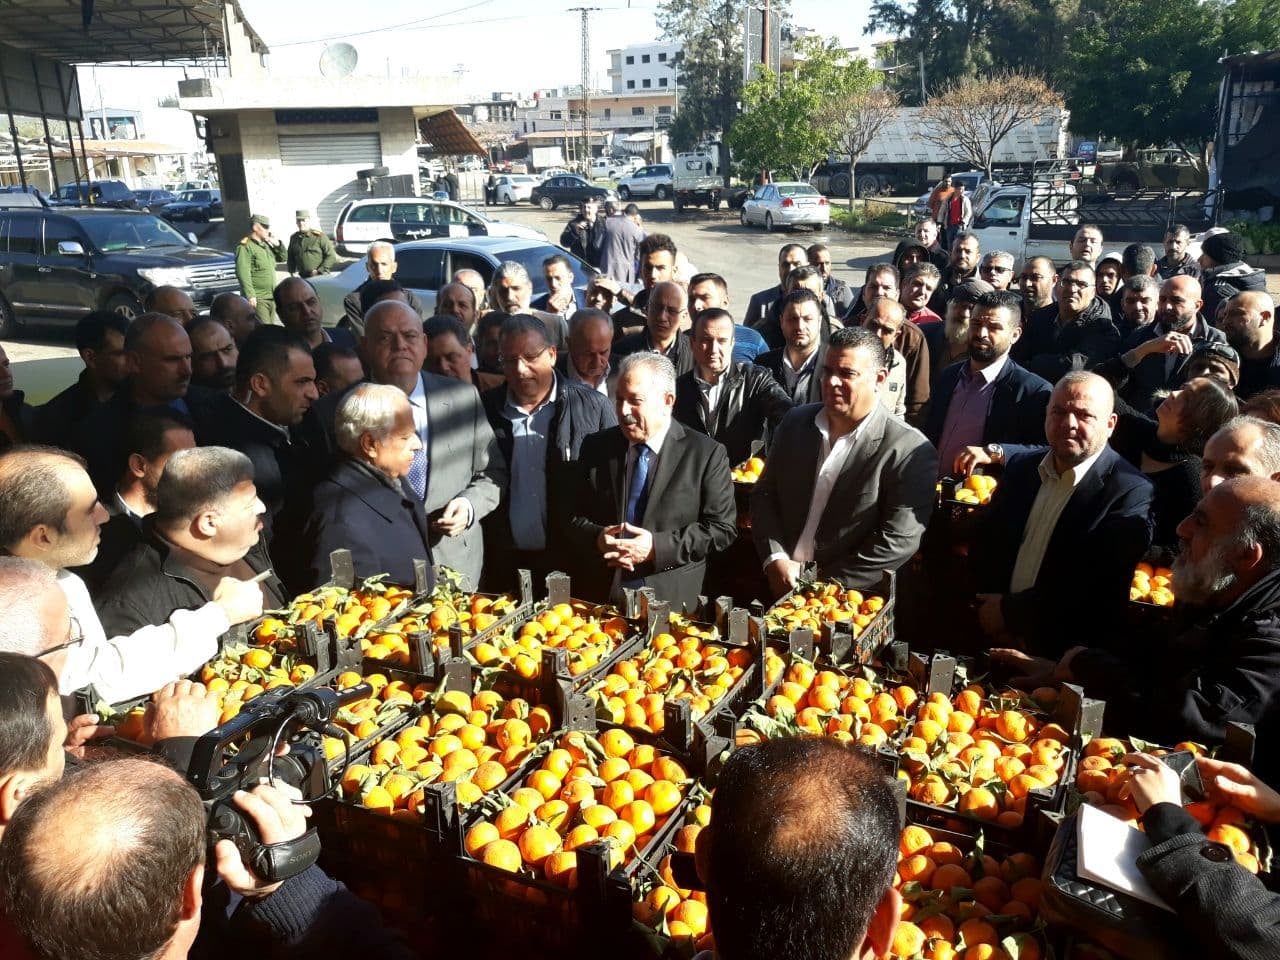 حسين عرنوس رئيس مجلس الوزراء يتفقد واقع تسويق الحمضيات في طرطوس